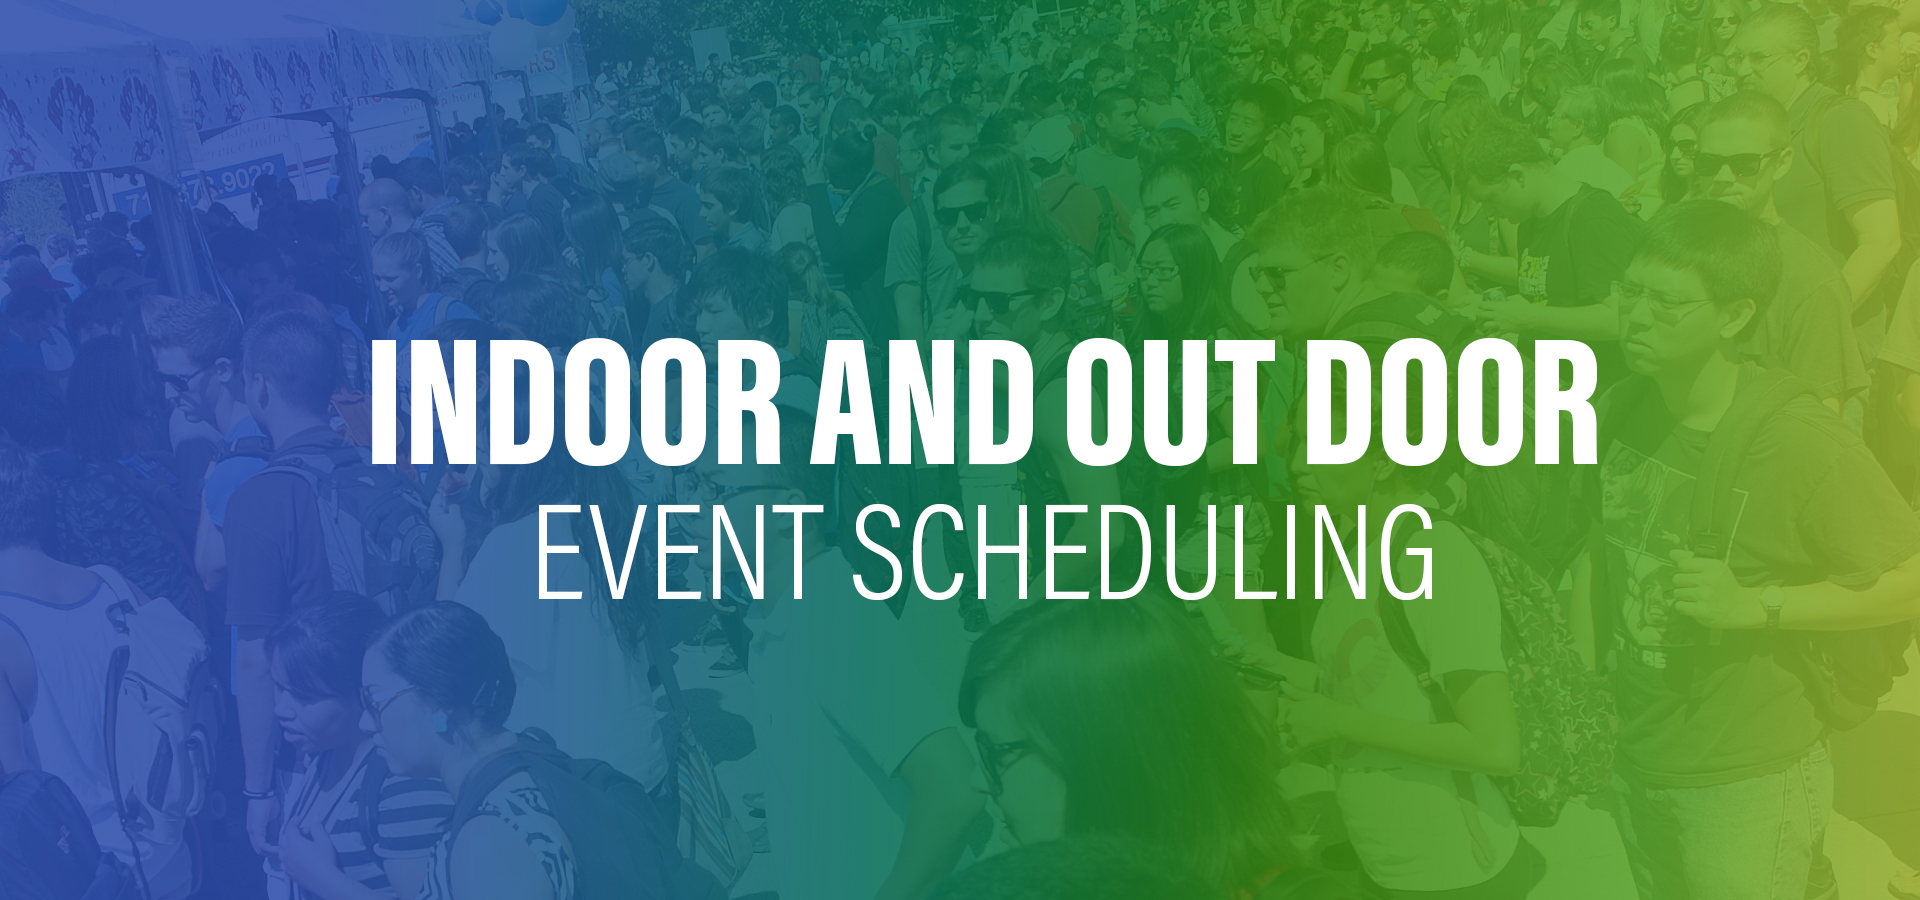 Indoor and Outdoor Event Scheduling